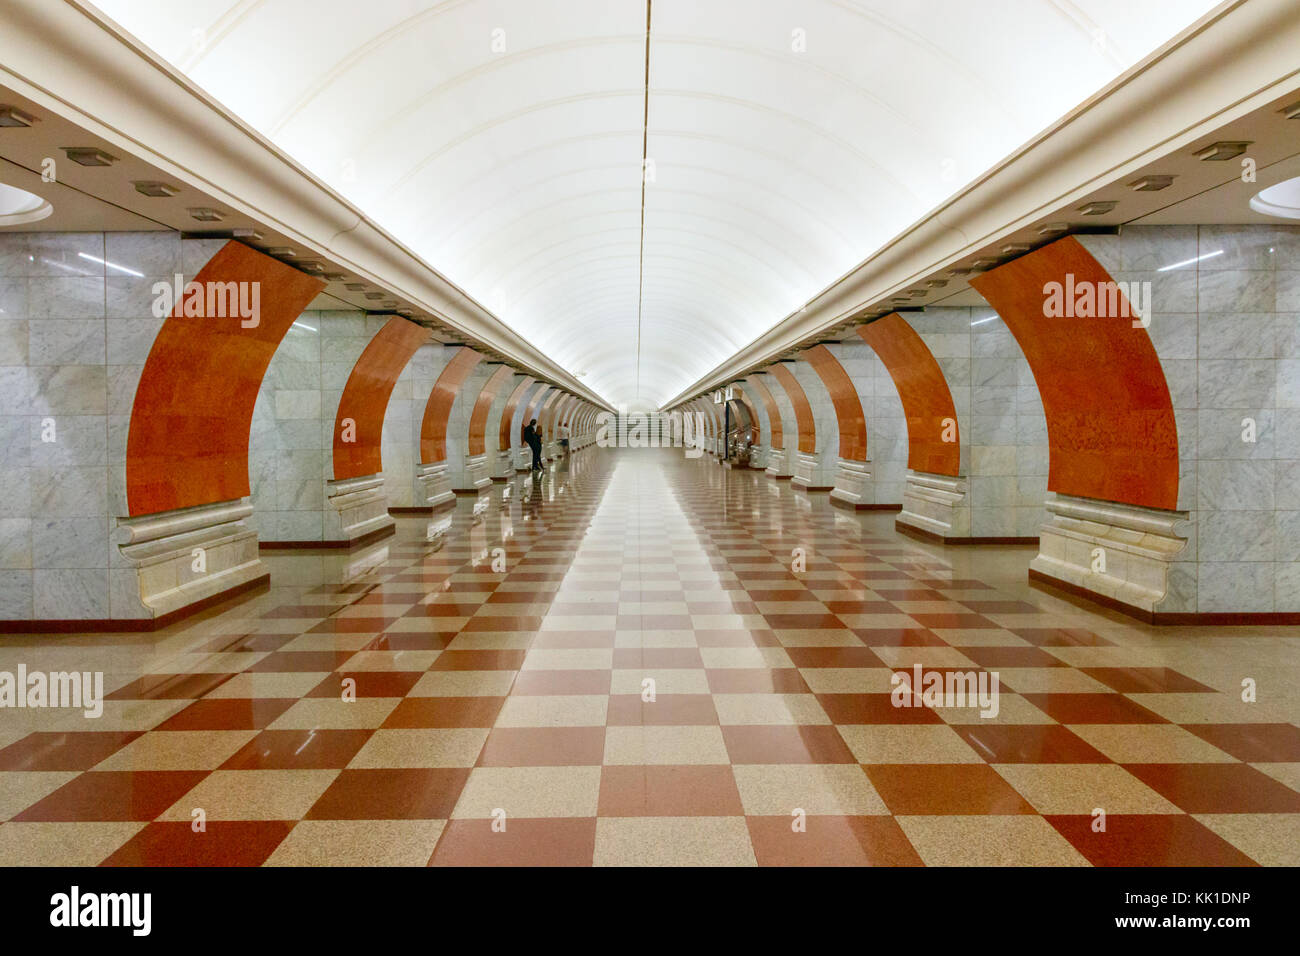 Piattaforma del Park Pobedy la stazione della metropolitana di Mosca, Russia. La metropolitana di Mosca è una delle più grandi di transito rapido di sistemi in tutto il mondo. Foto Stock